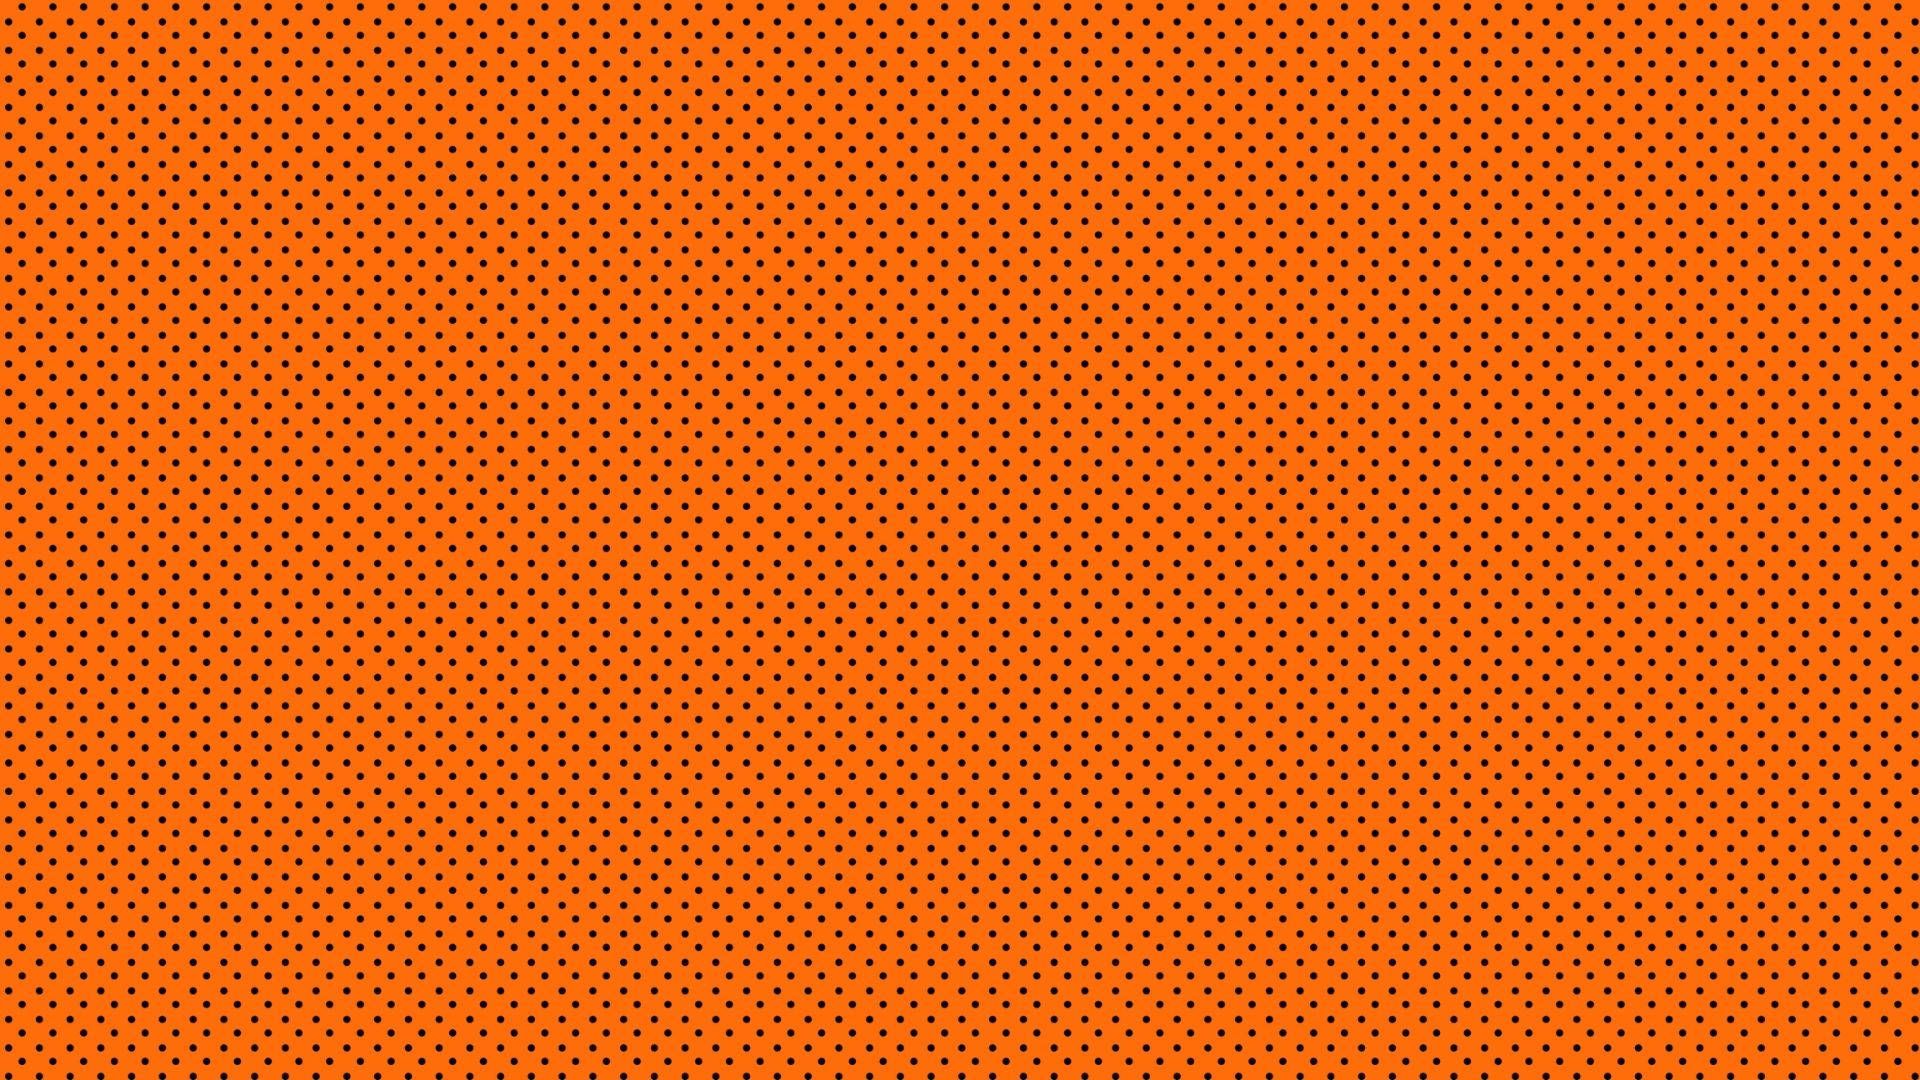 An orange background with small white dots - Dark orange